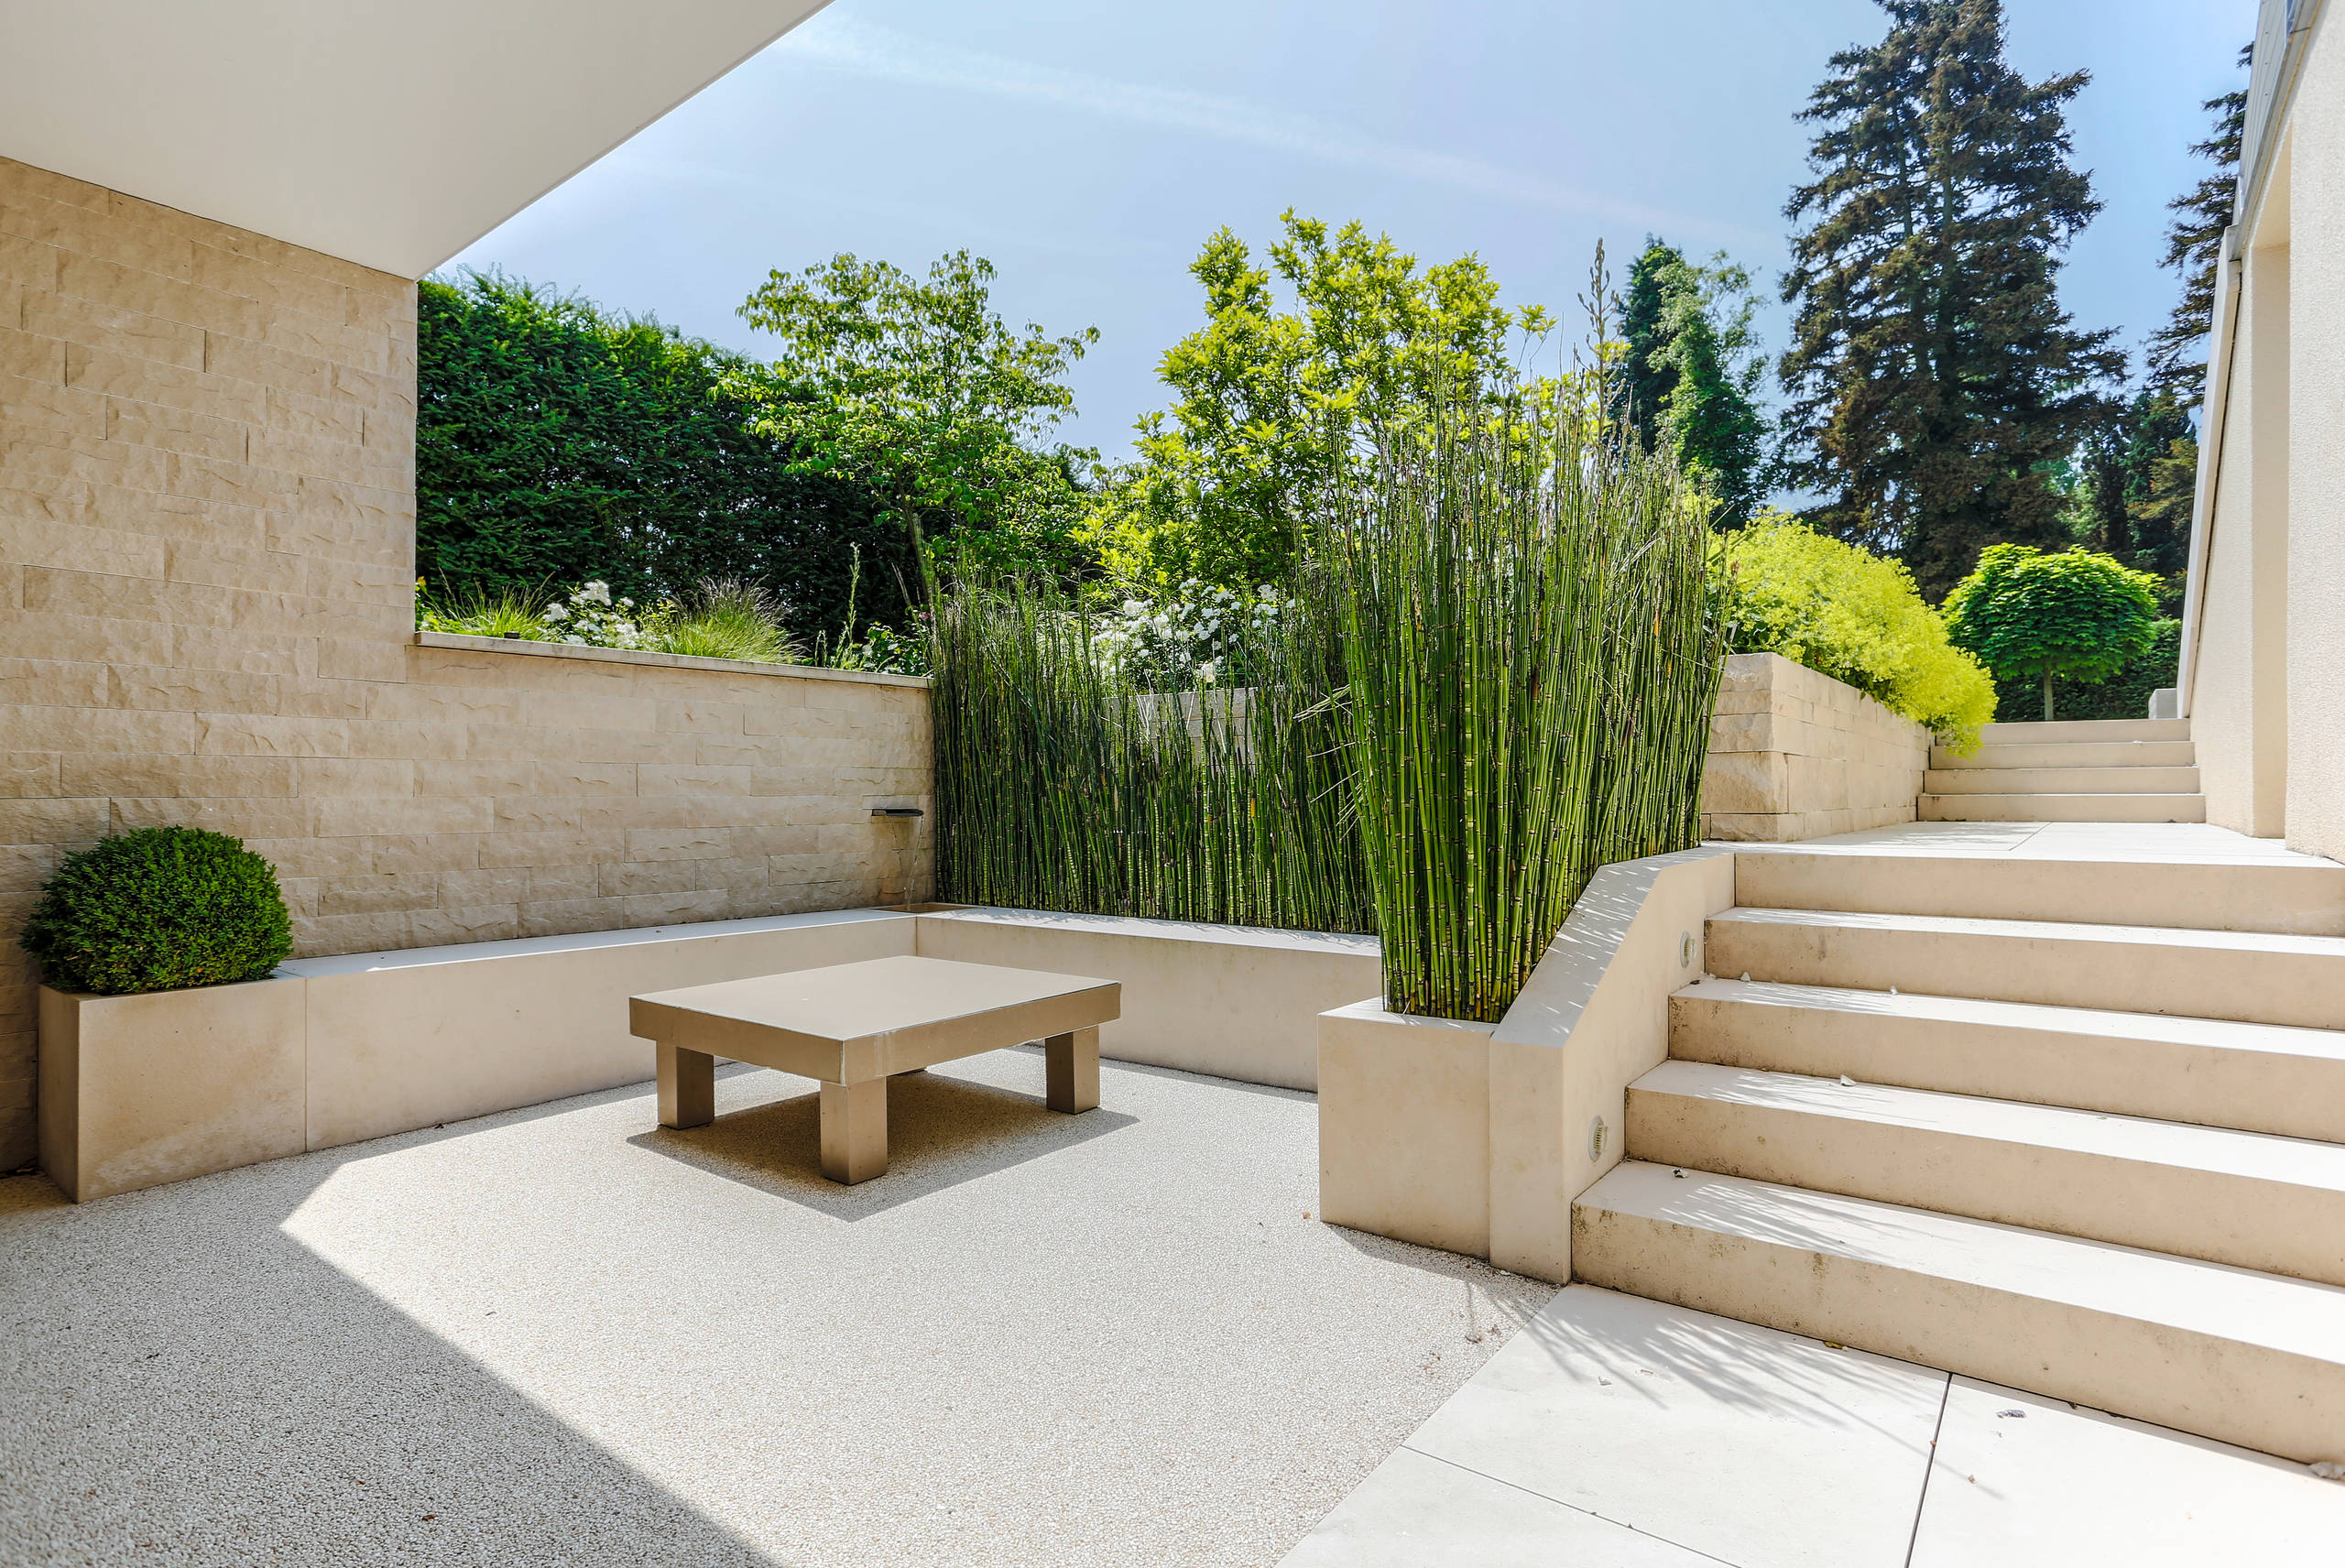 Villa mit Wasserspiel - Modern - Garten - Stuttgart - von Helmut Haas GmbH  | Houzz